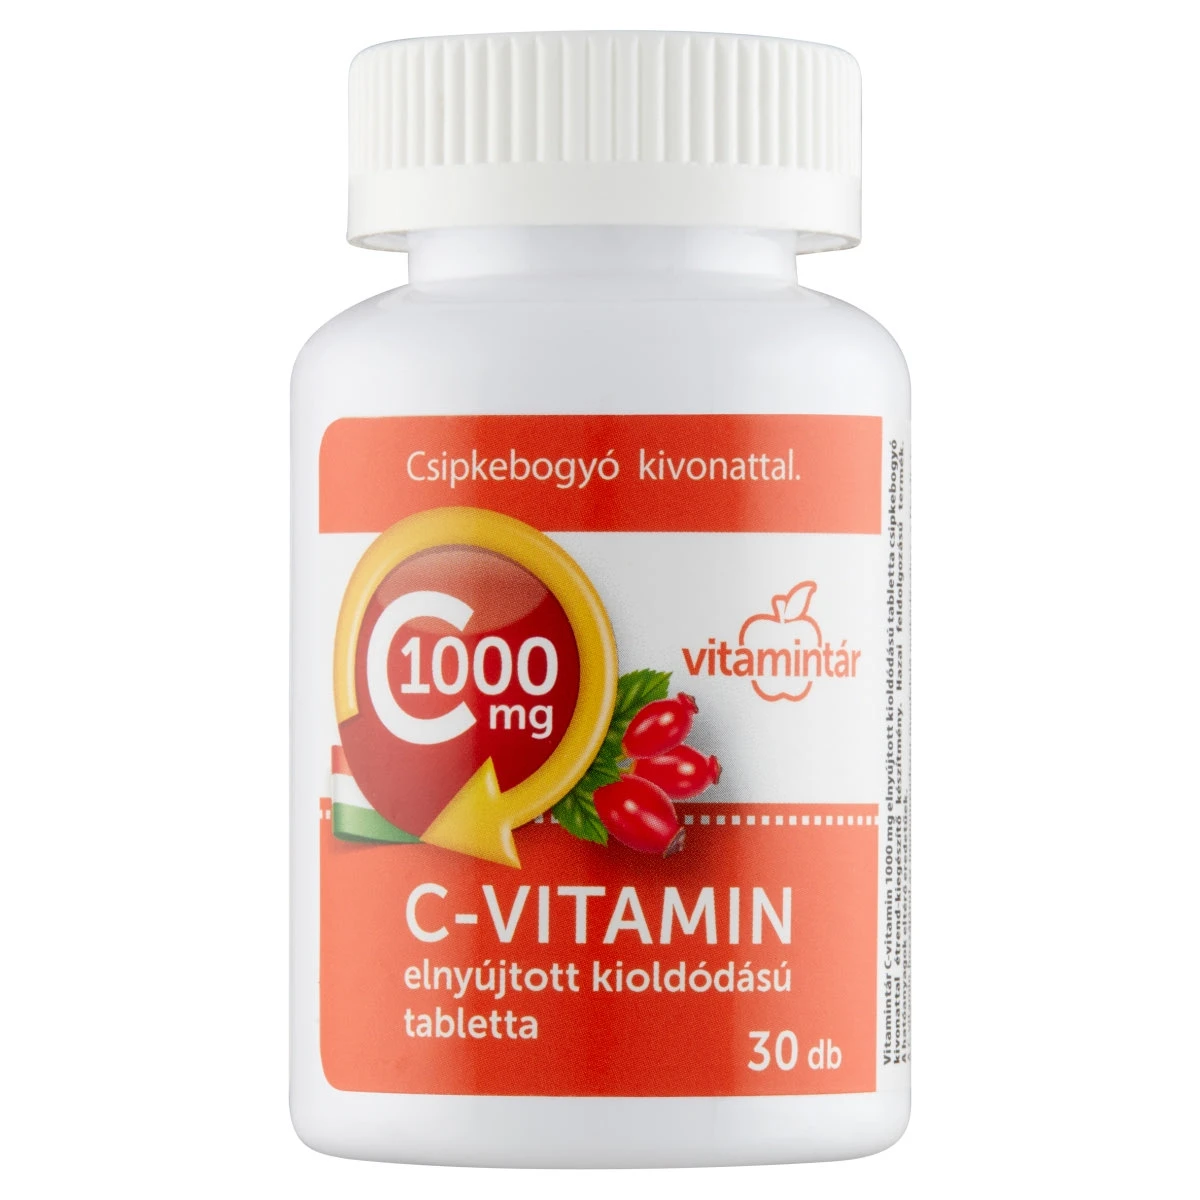 Vitamintár C vitamin 1000 mg csipkebogyó kivonattal 90+30x